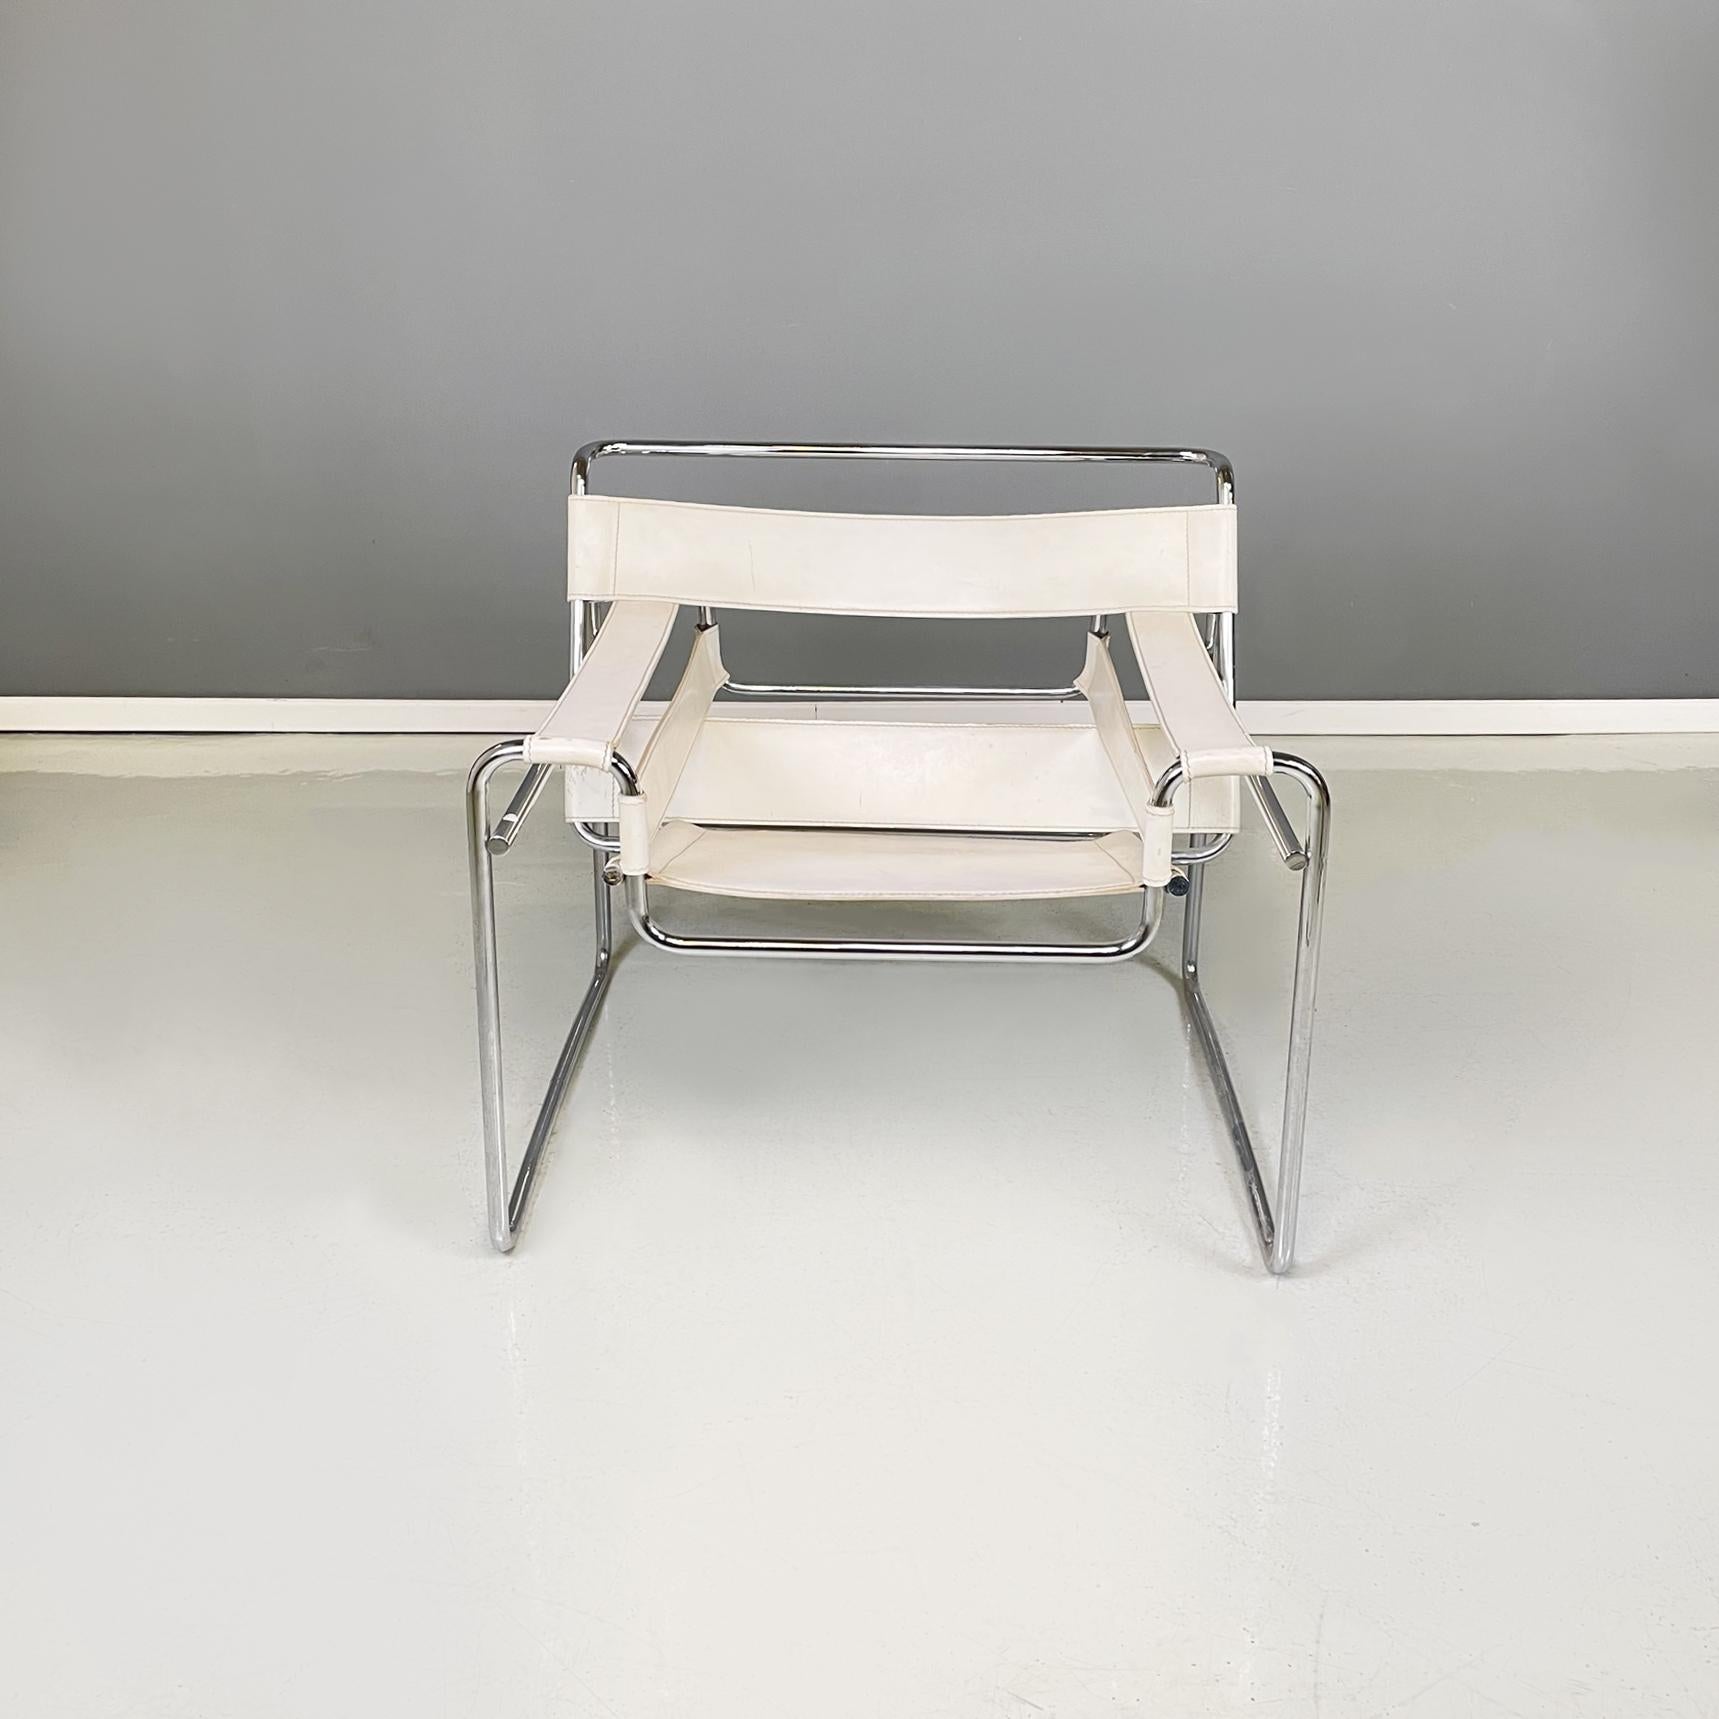 Fauteuil blanc moderne italien Wassily B3 de Marcel Breuer pour Gavina, années 1960
Fauteuil iconique mod. Wassily, également connu sous le nom de mod. B3, avec une assise rectangulaire en cuir blanc. La structure, qui accueille les différentes